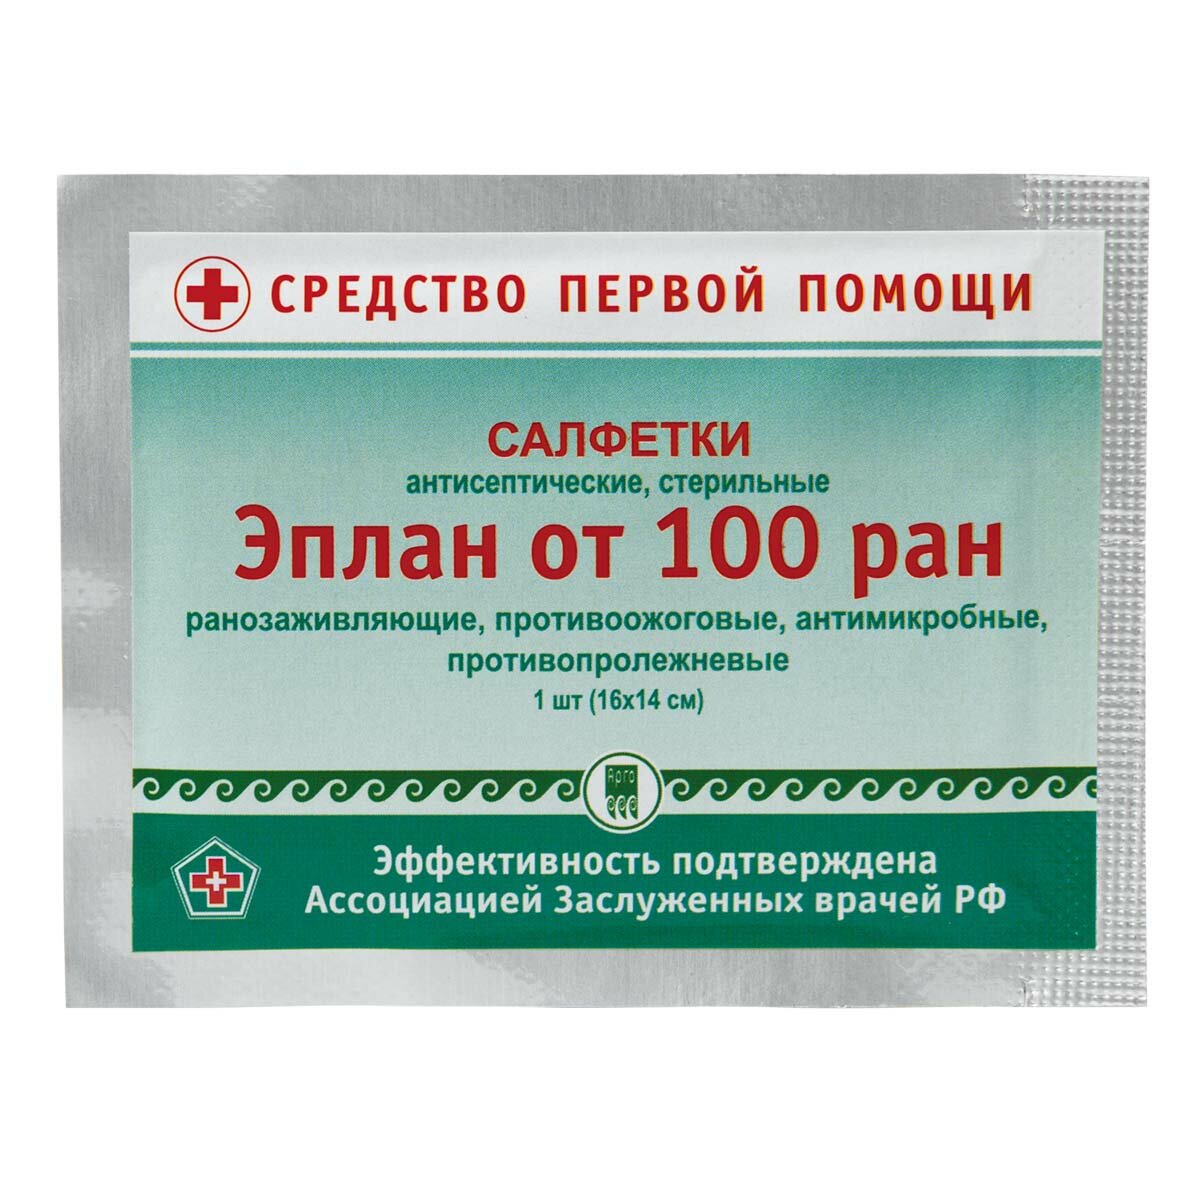 Салфетки антисептические стерильные "Эплан от 100 ран" от Арго ЭМ-1